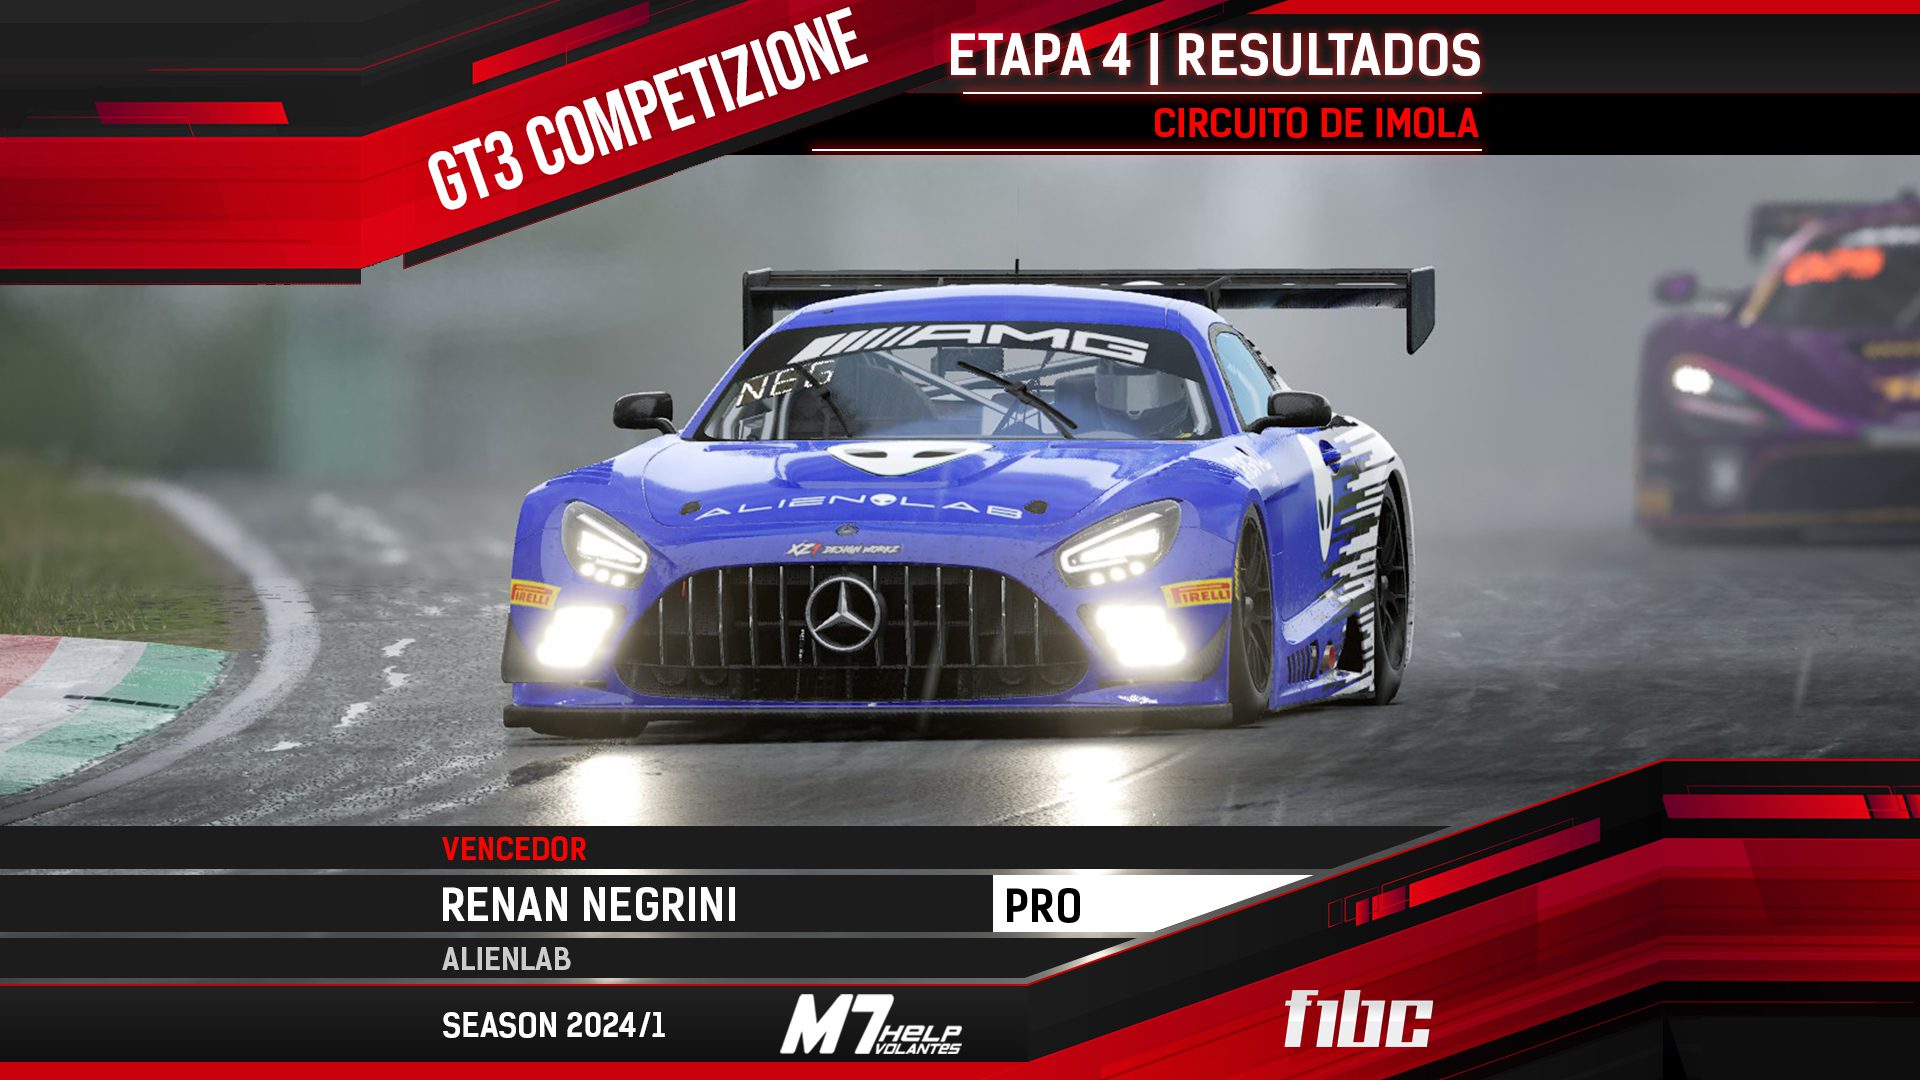 F1BC GT3 Competizione: Renan Negrini vence corrida com final chuvoso em Ímola